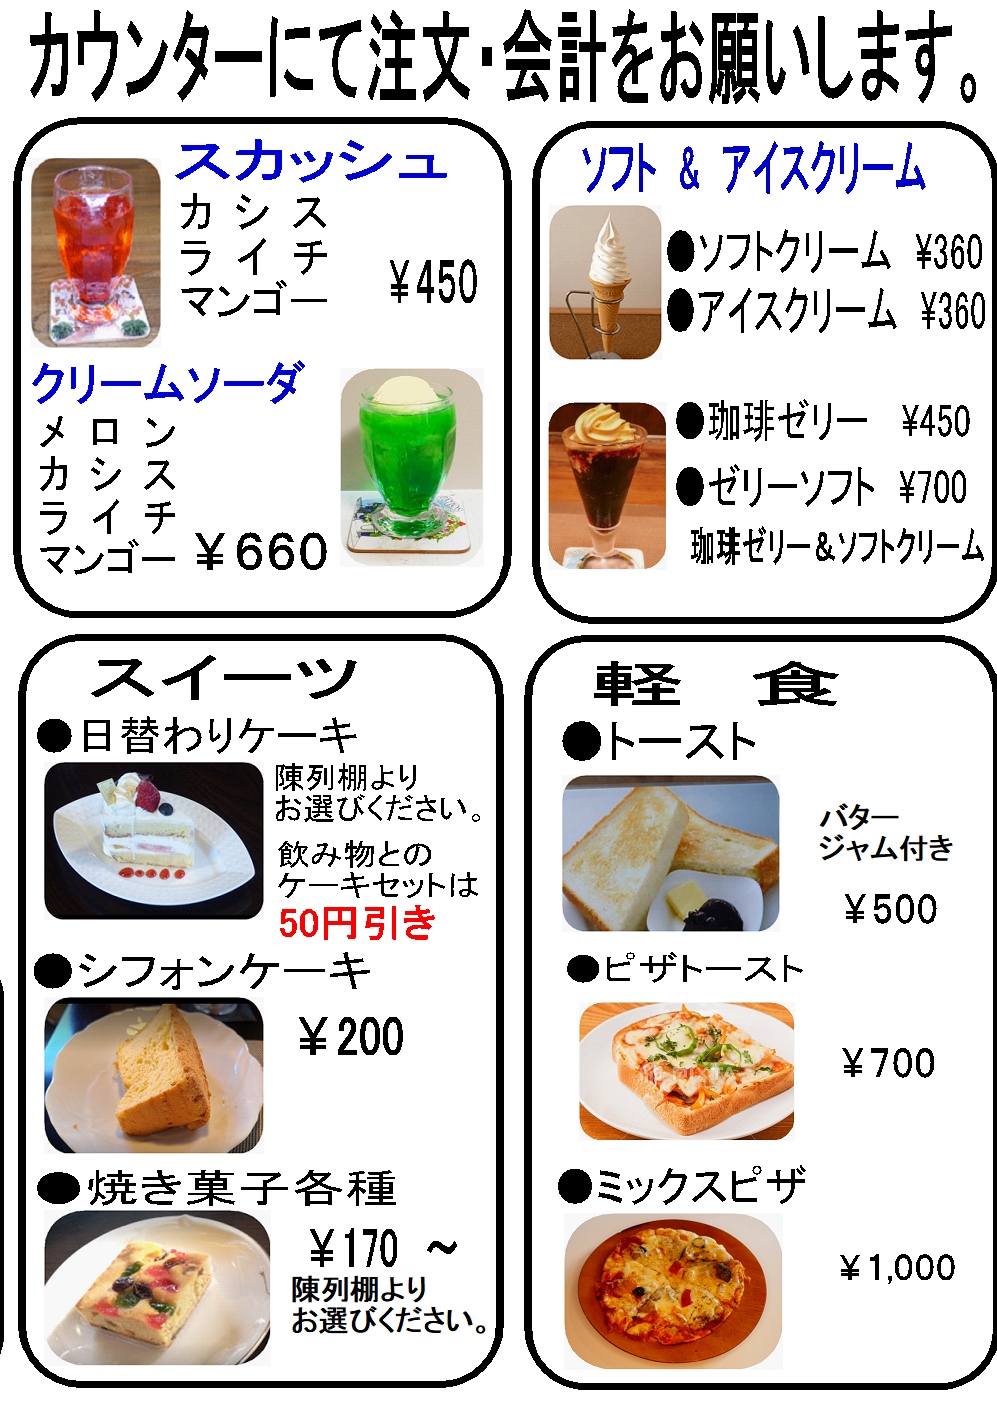 menu